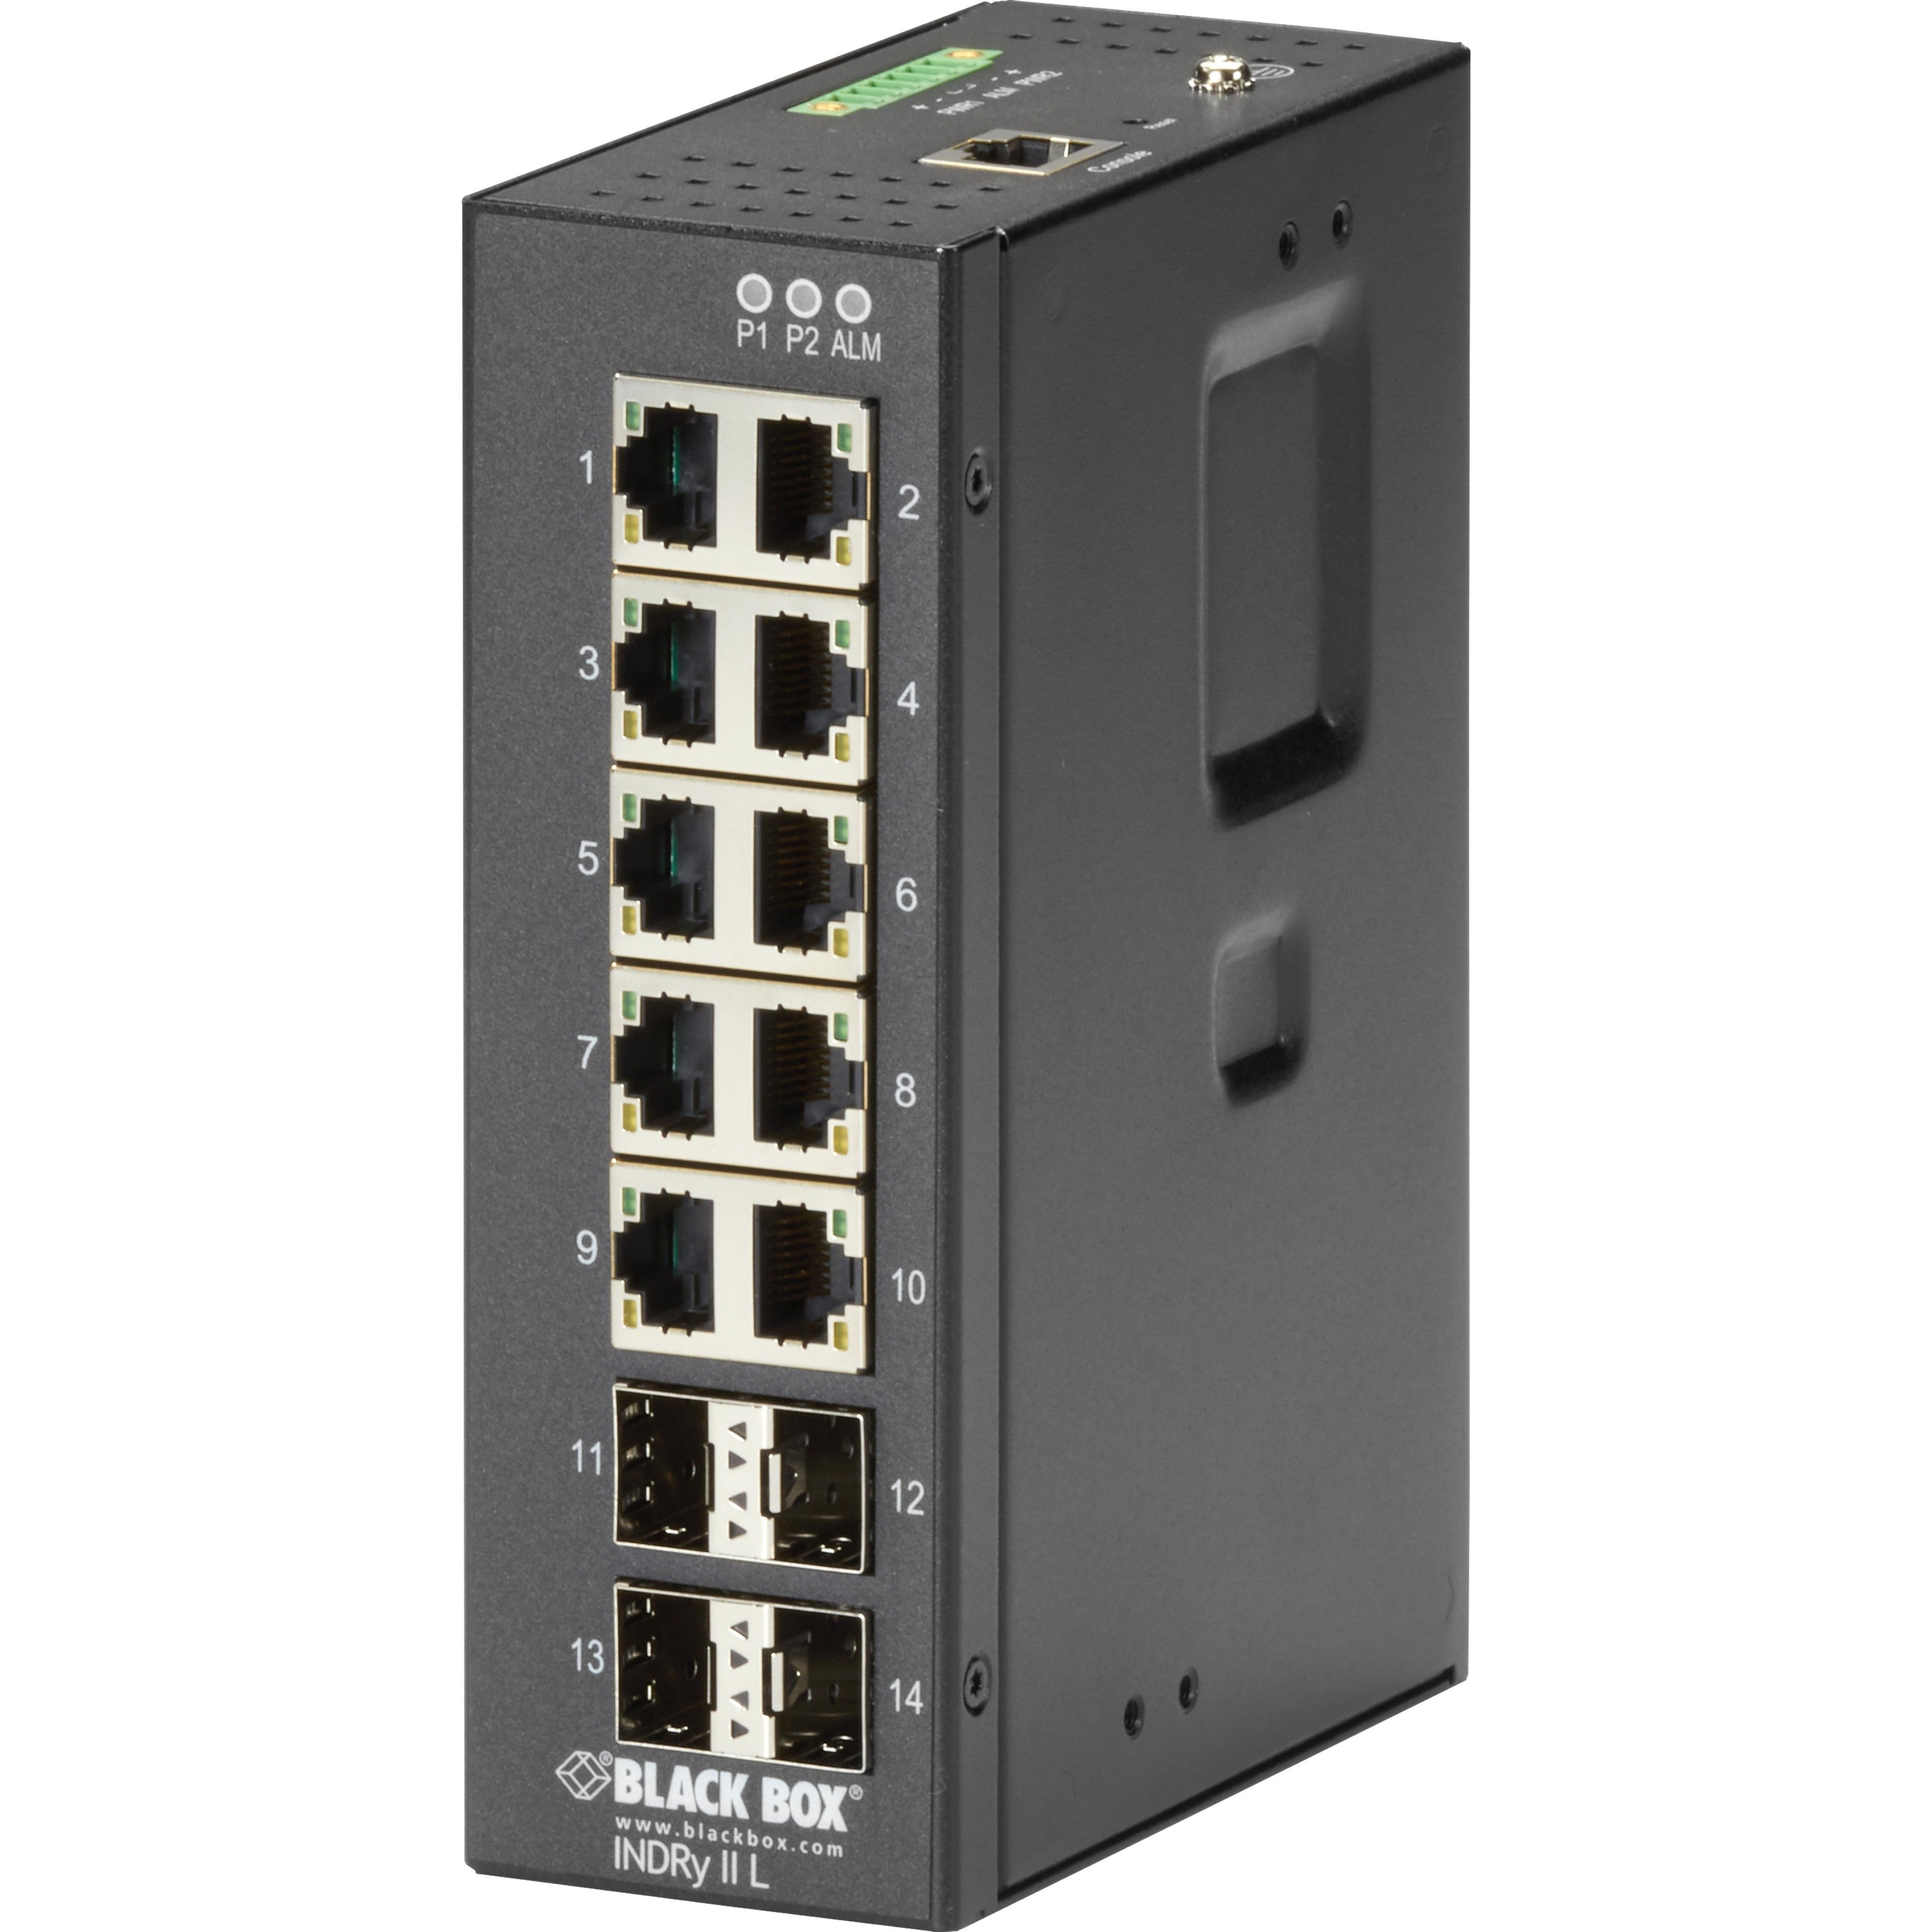 Black Box LIG1014A Ethernet Switch, 10-Port Gigabit Ethernet